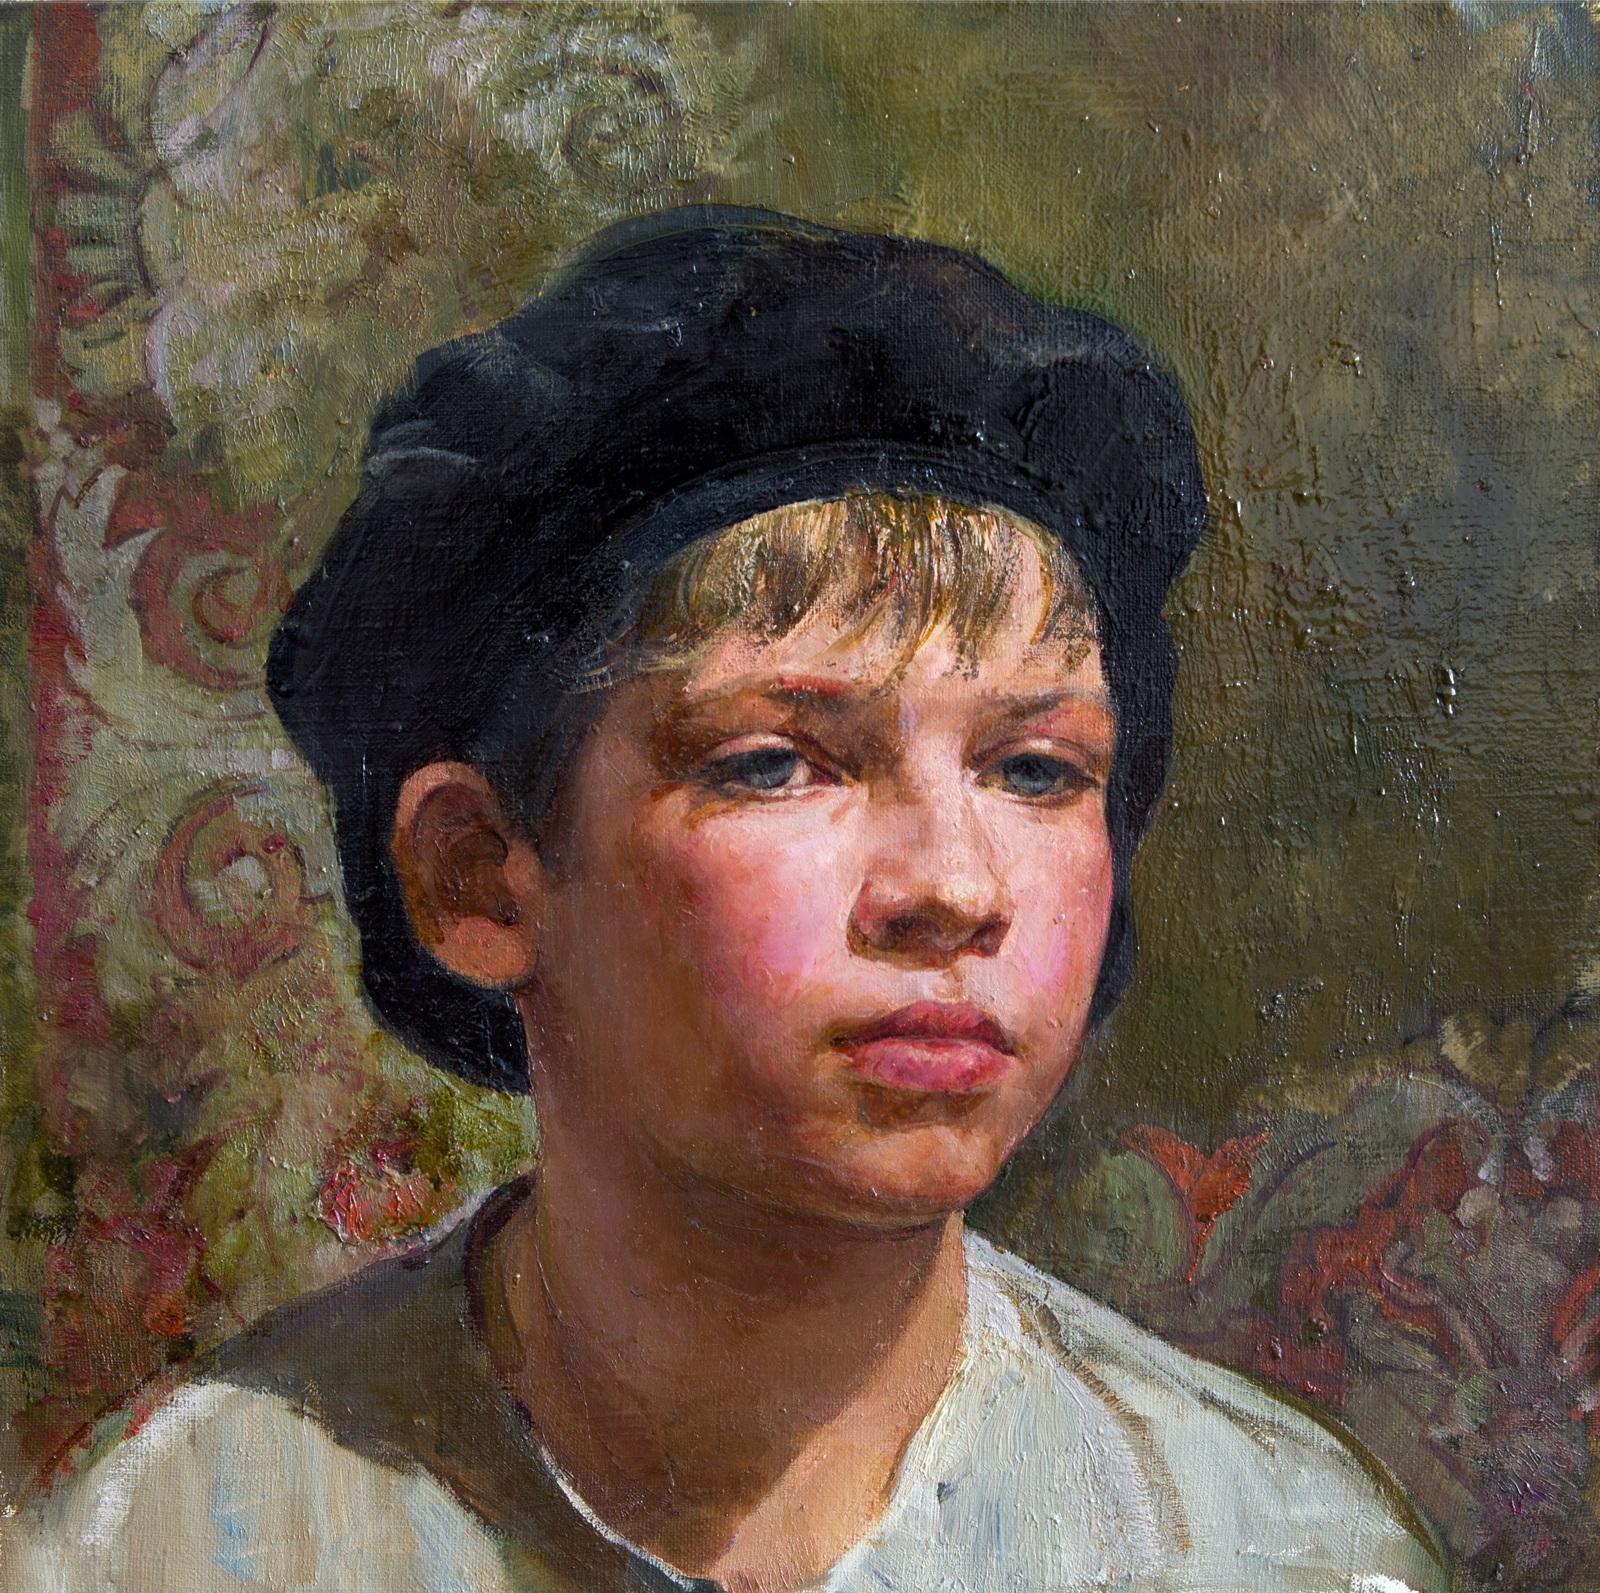 мальчик в народной одежде. Original modern art painting